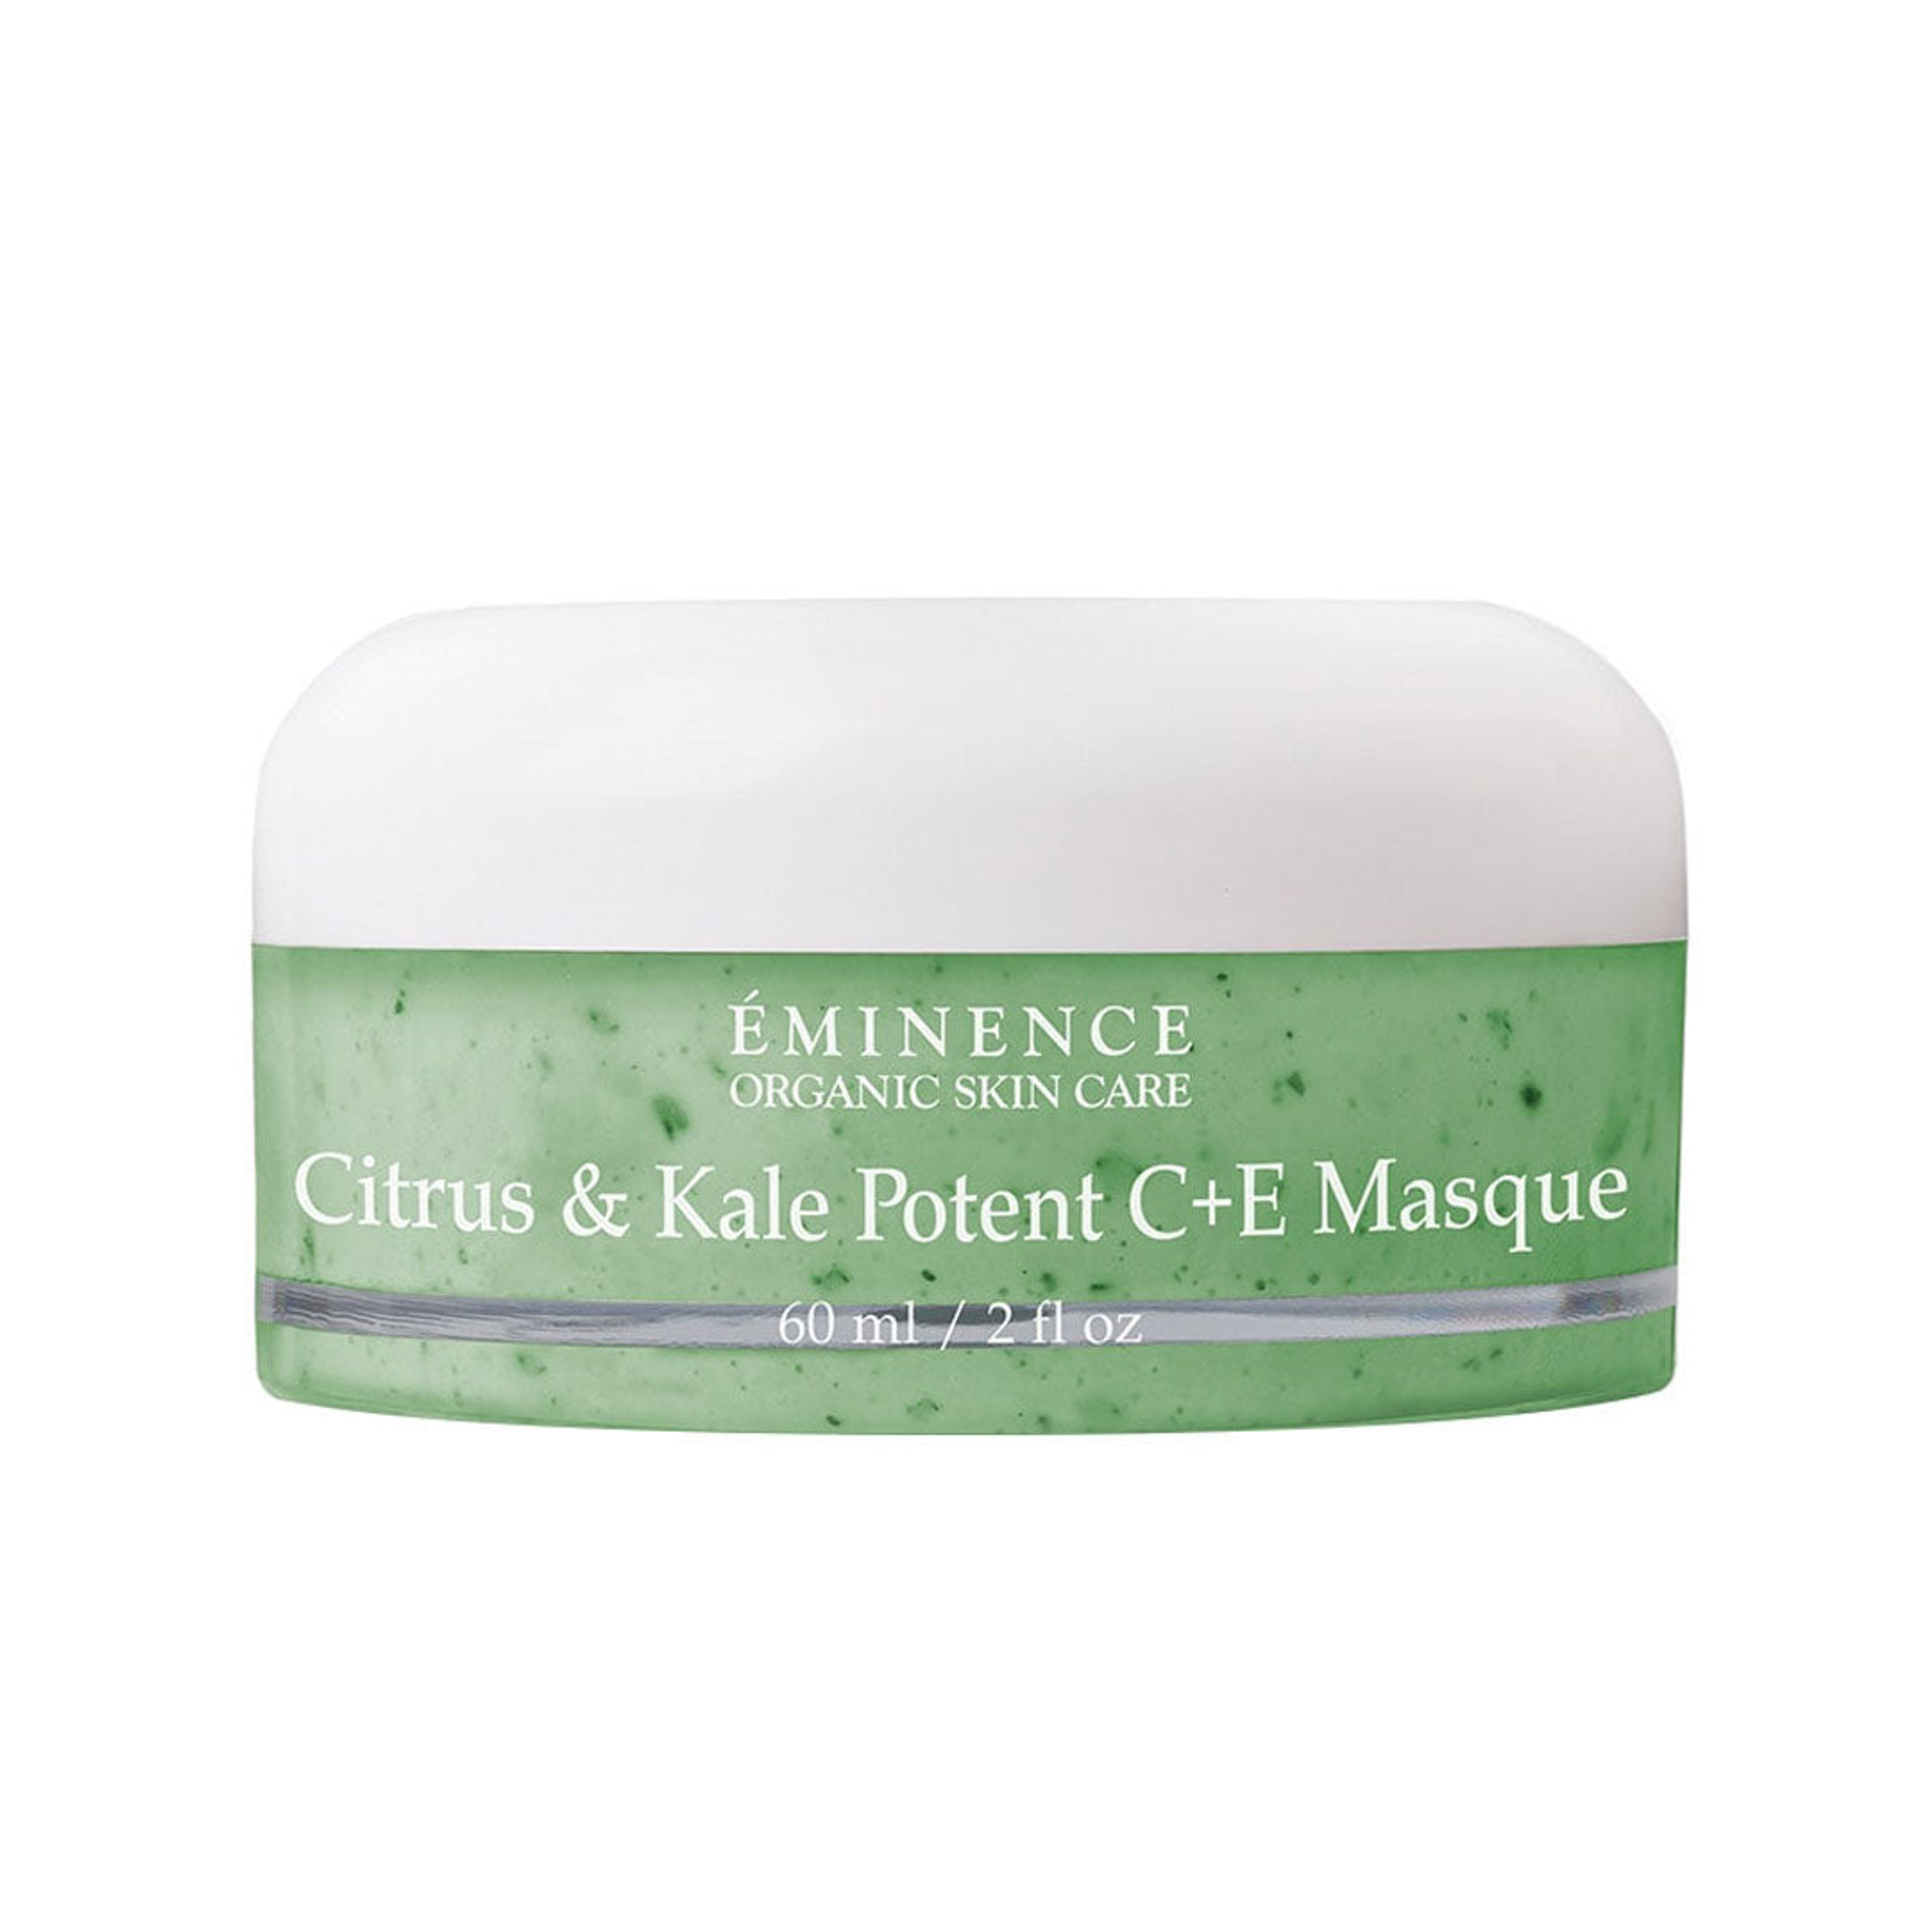 Citrus & Kale Potent C+E Masque image 1 expanded